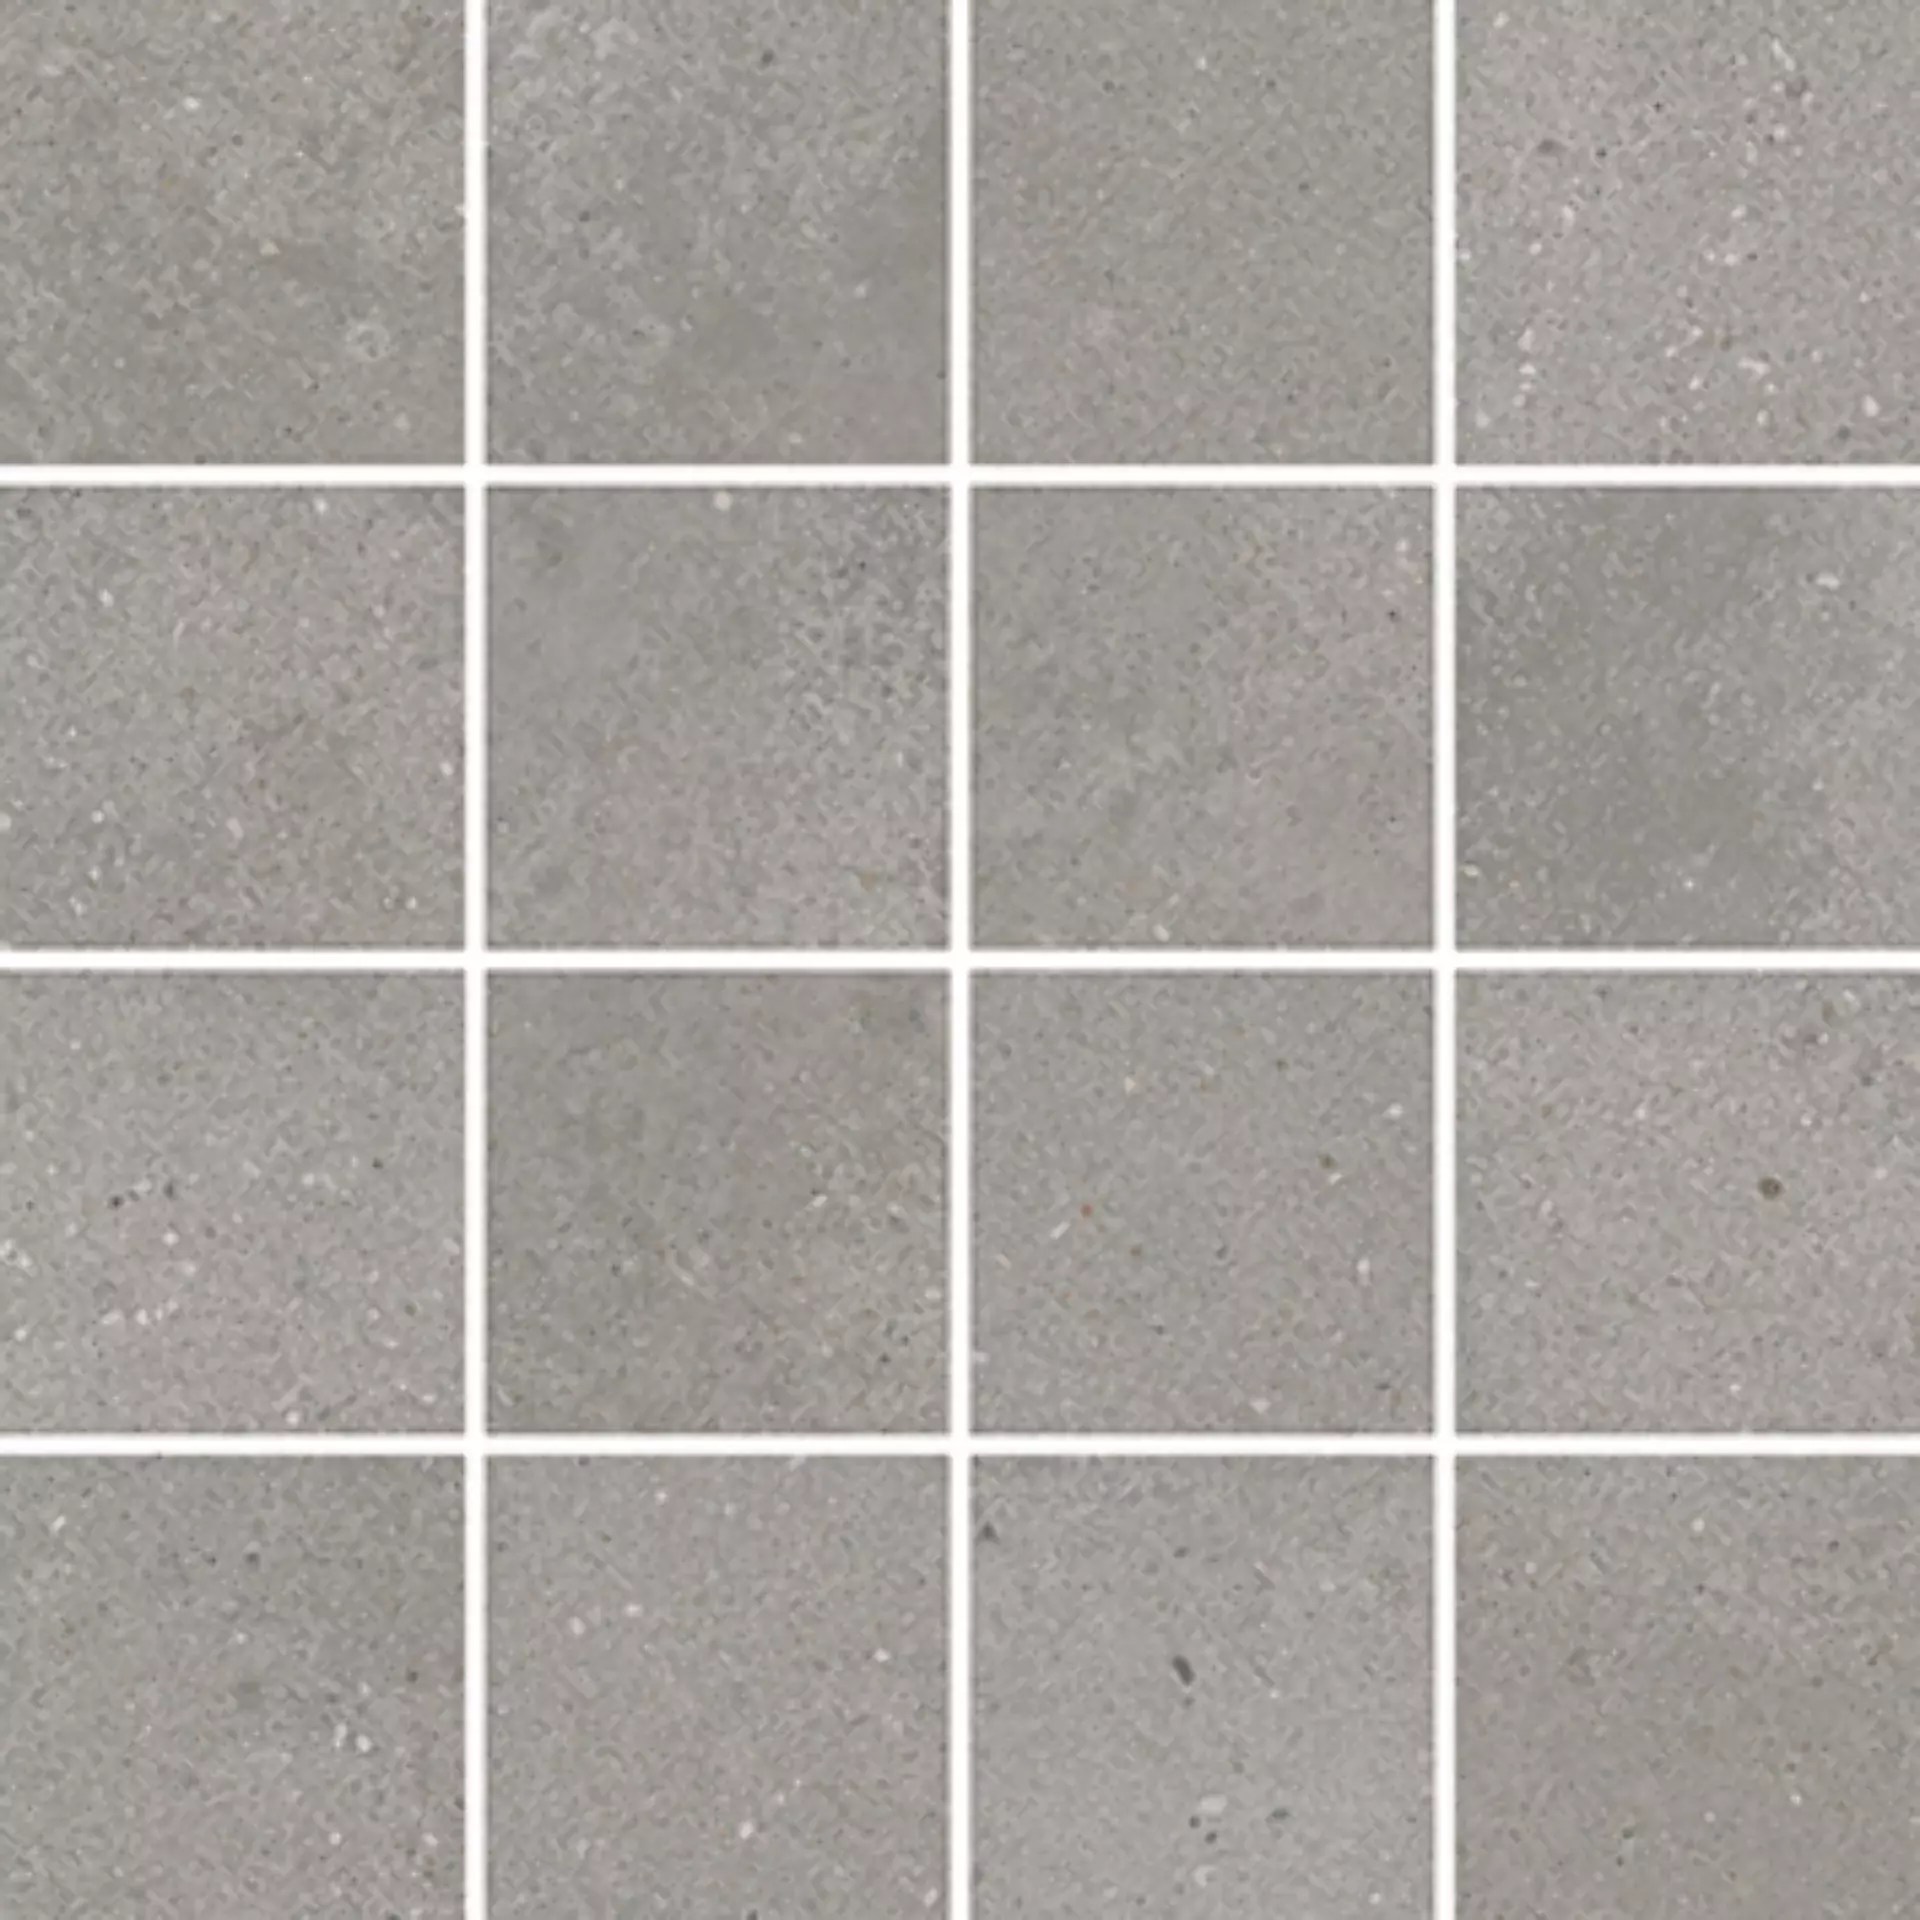 Wandfliese,Bodenfliese Villeroy & Boch Urban Jungle Grey Matt Grey 2013-TC60 matt 7,5x7,5cm Mosaik (7,5x7,5) rektifiziert 10mm